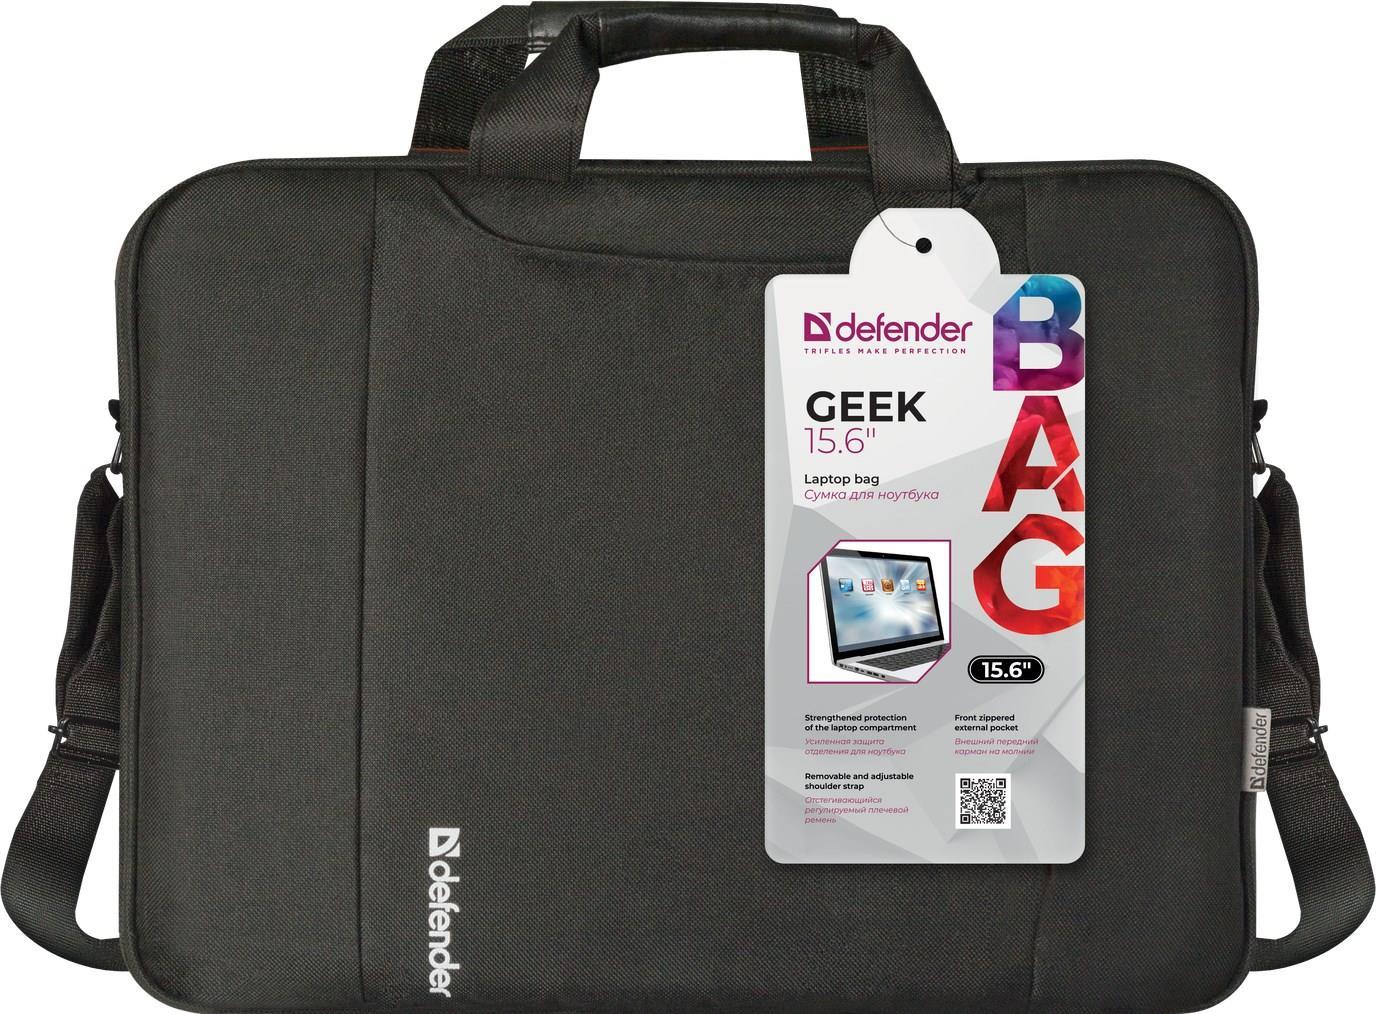 Defender Geek laptoptasche 39,6 cm (15.6") Schwarz (26084)